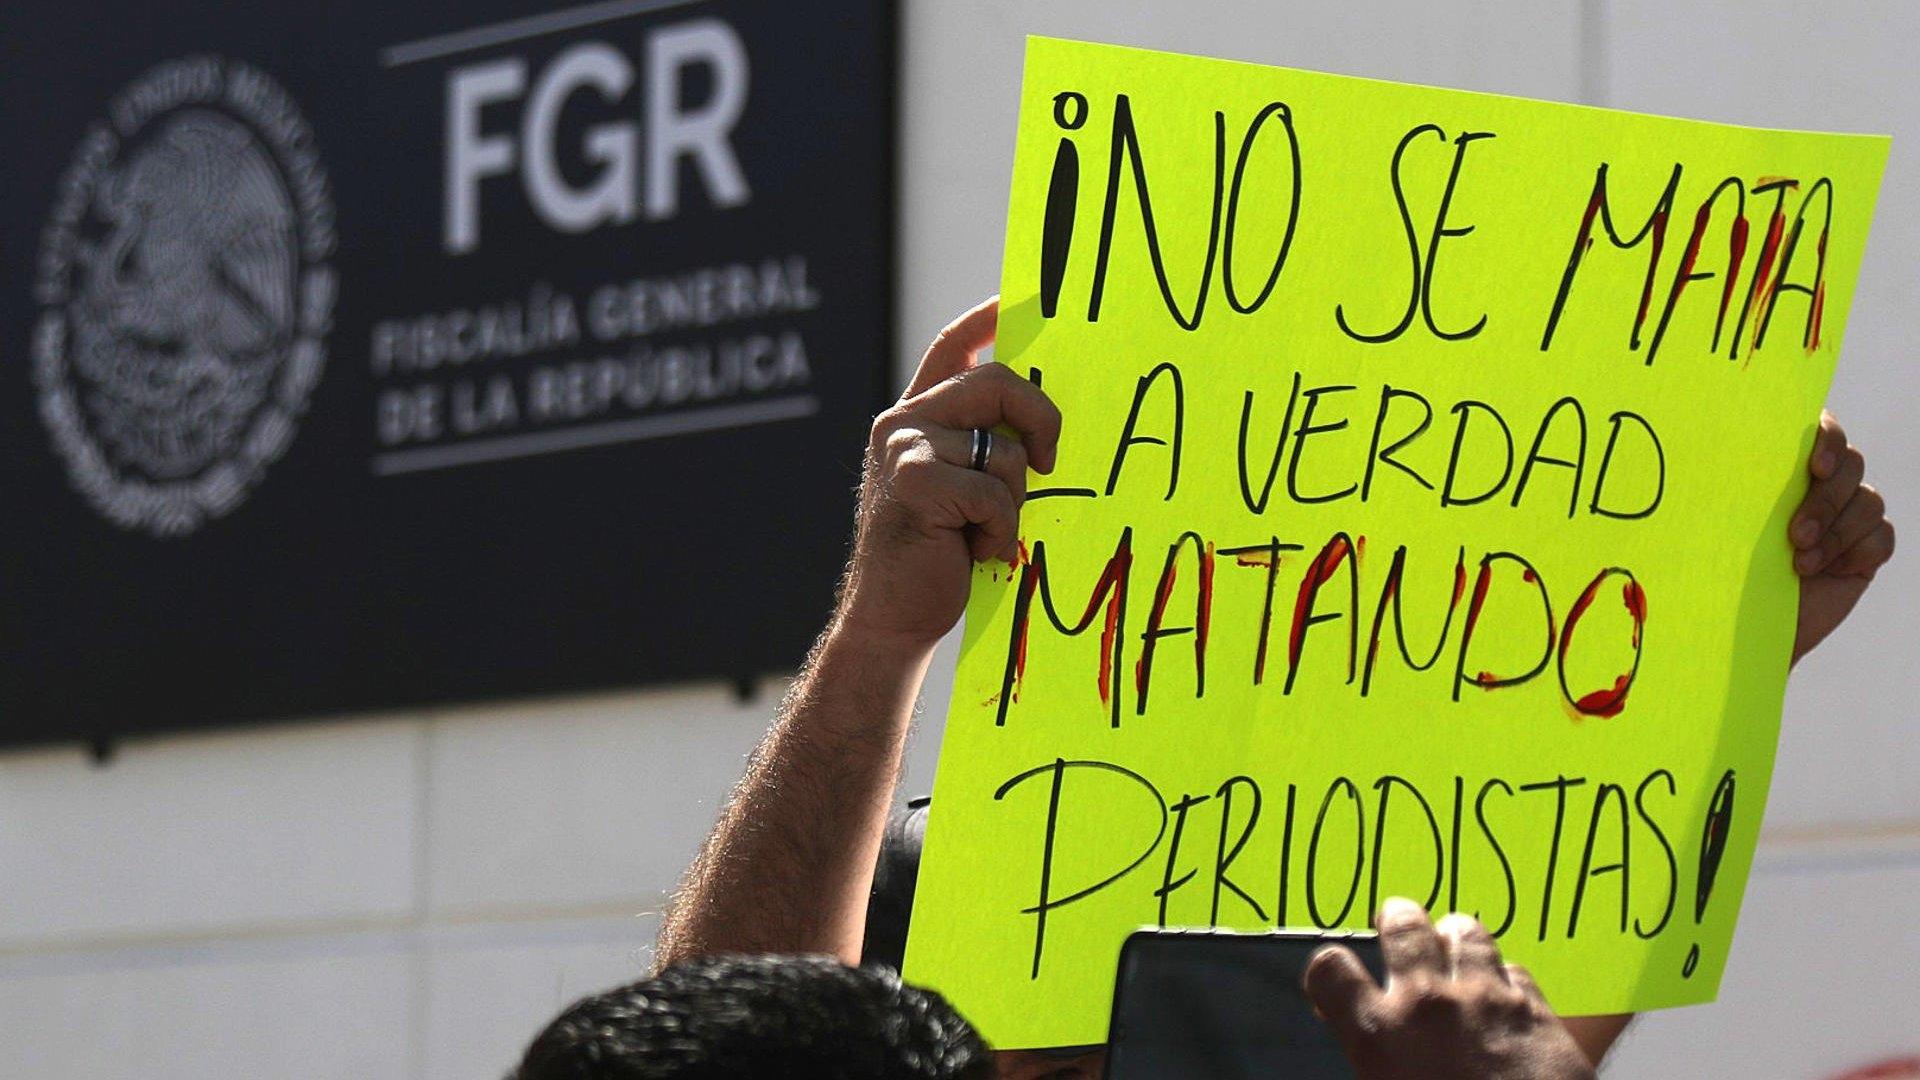 Periodistas en Guerrero Marchan para Exigir Justicia tras Ola de Ataques 